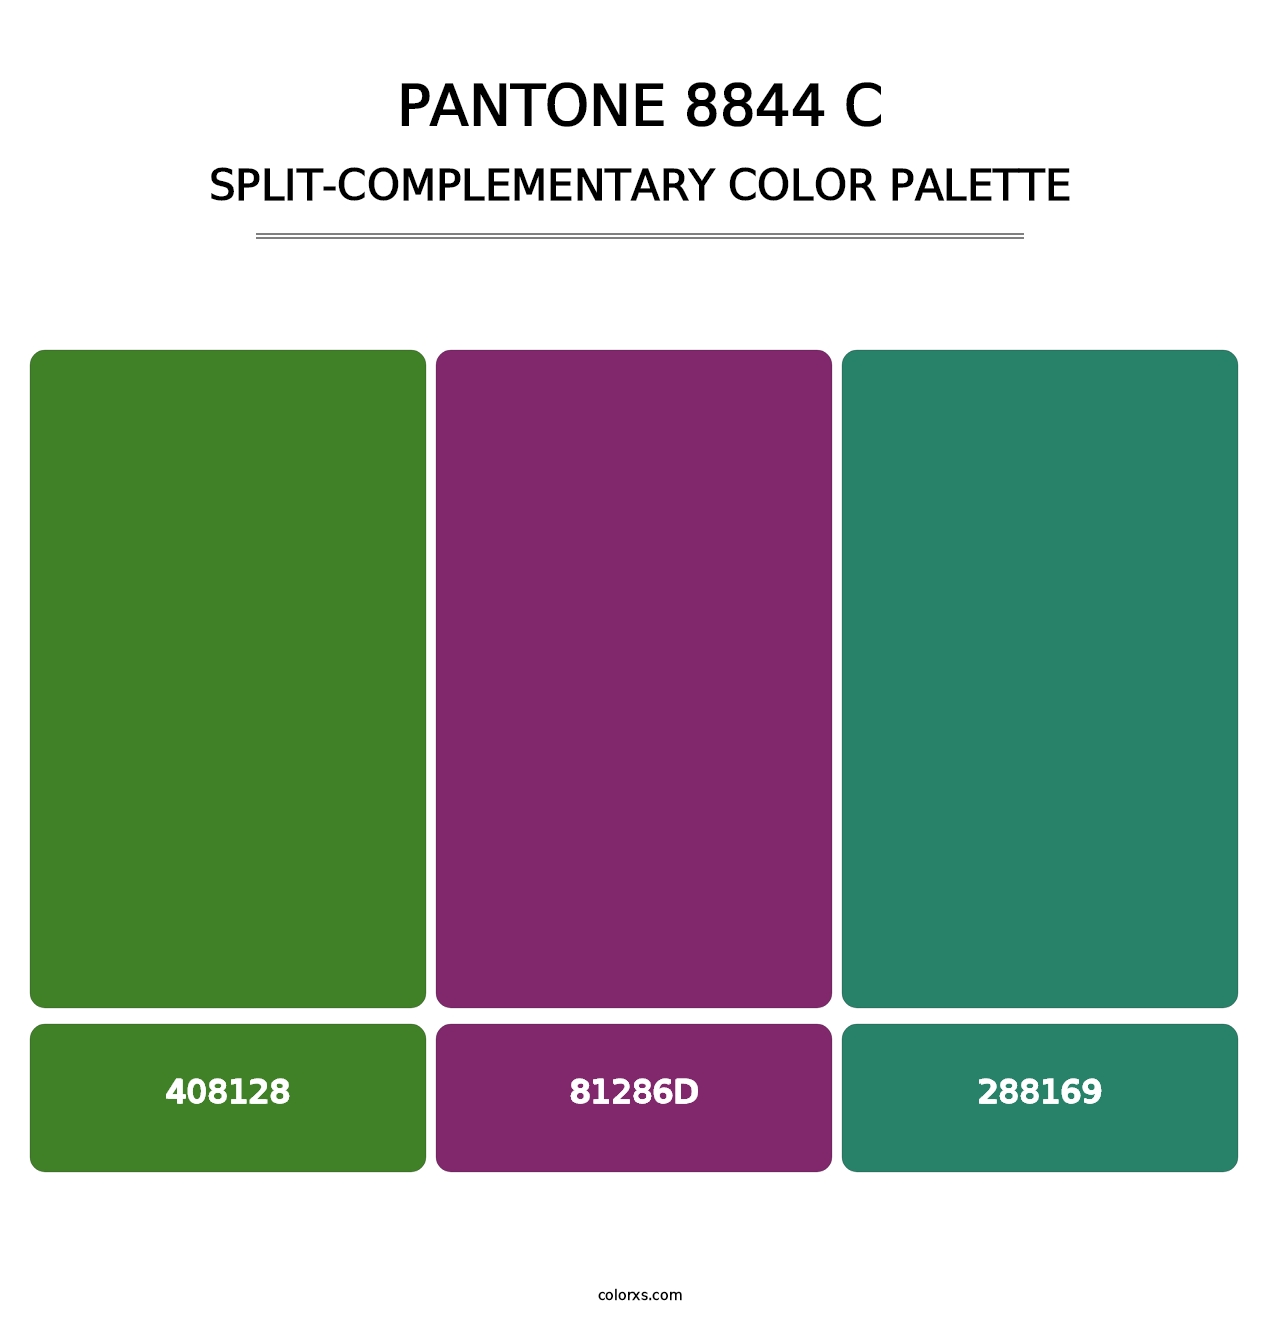 PANTONE 8844 C - Split-Complementary Color Palette